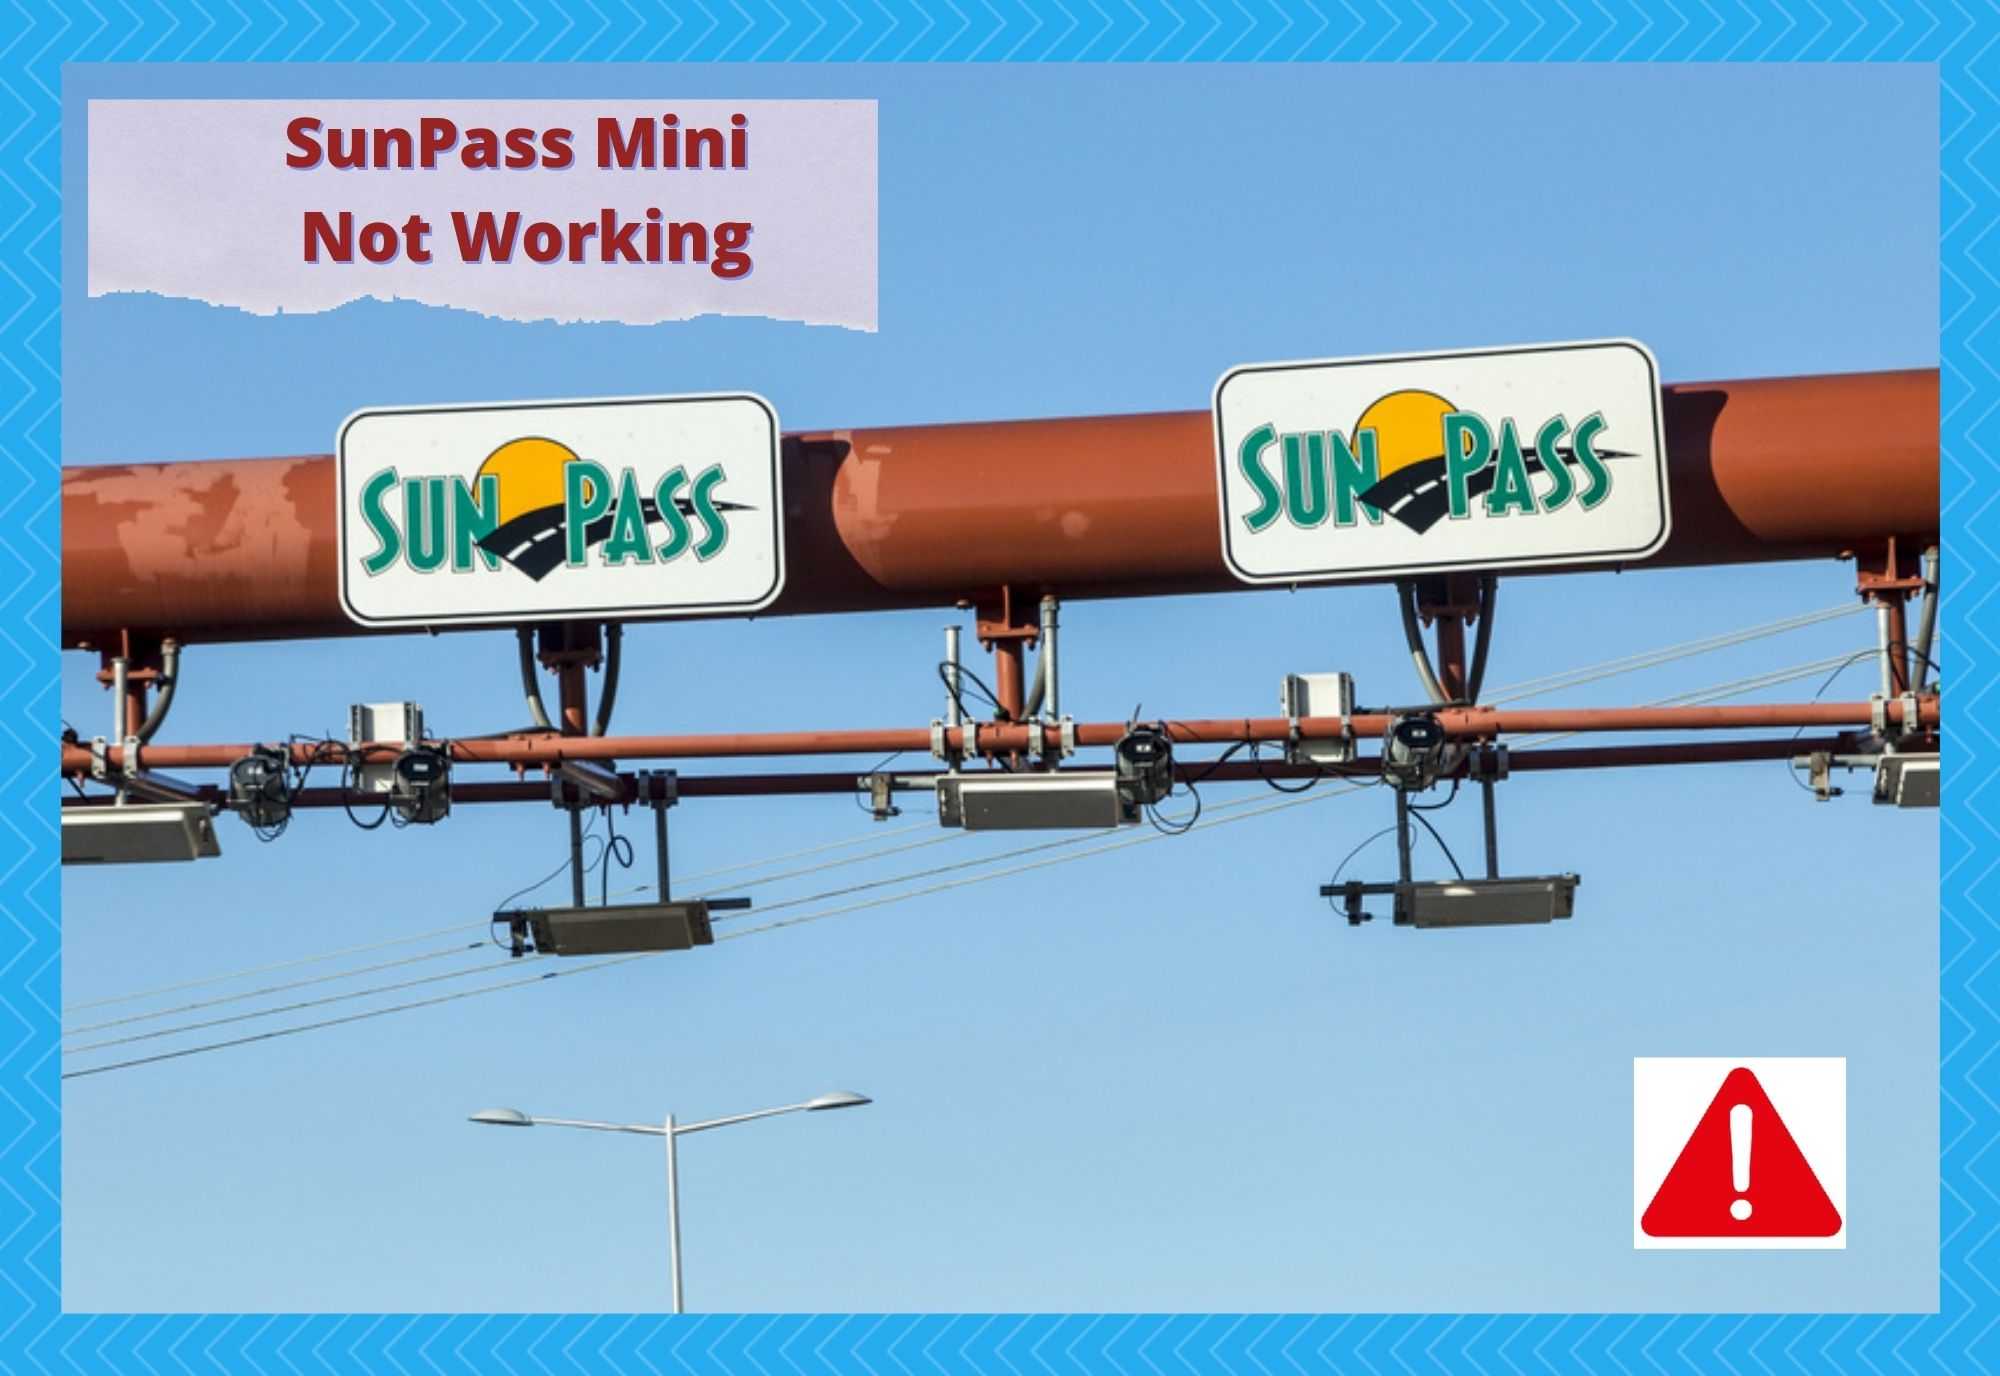 sunpass mini not working